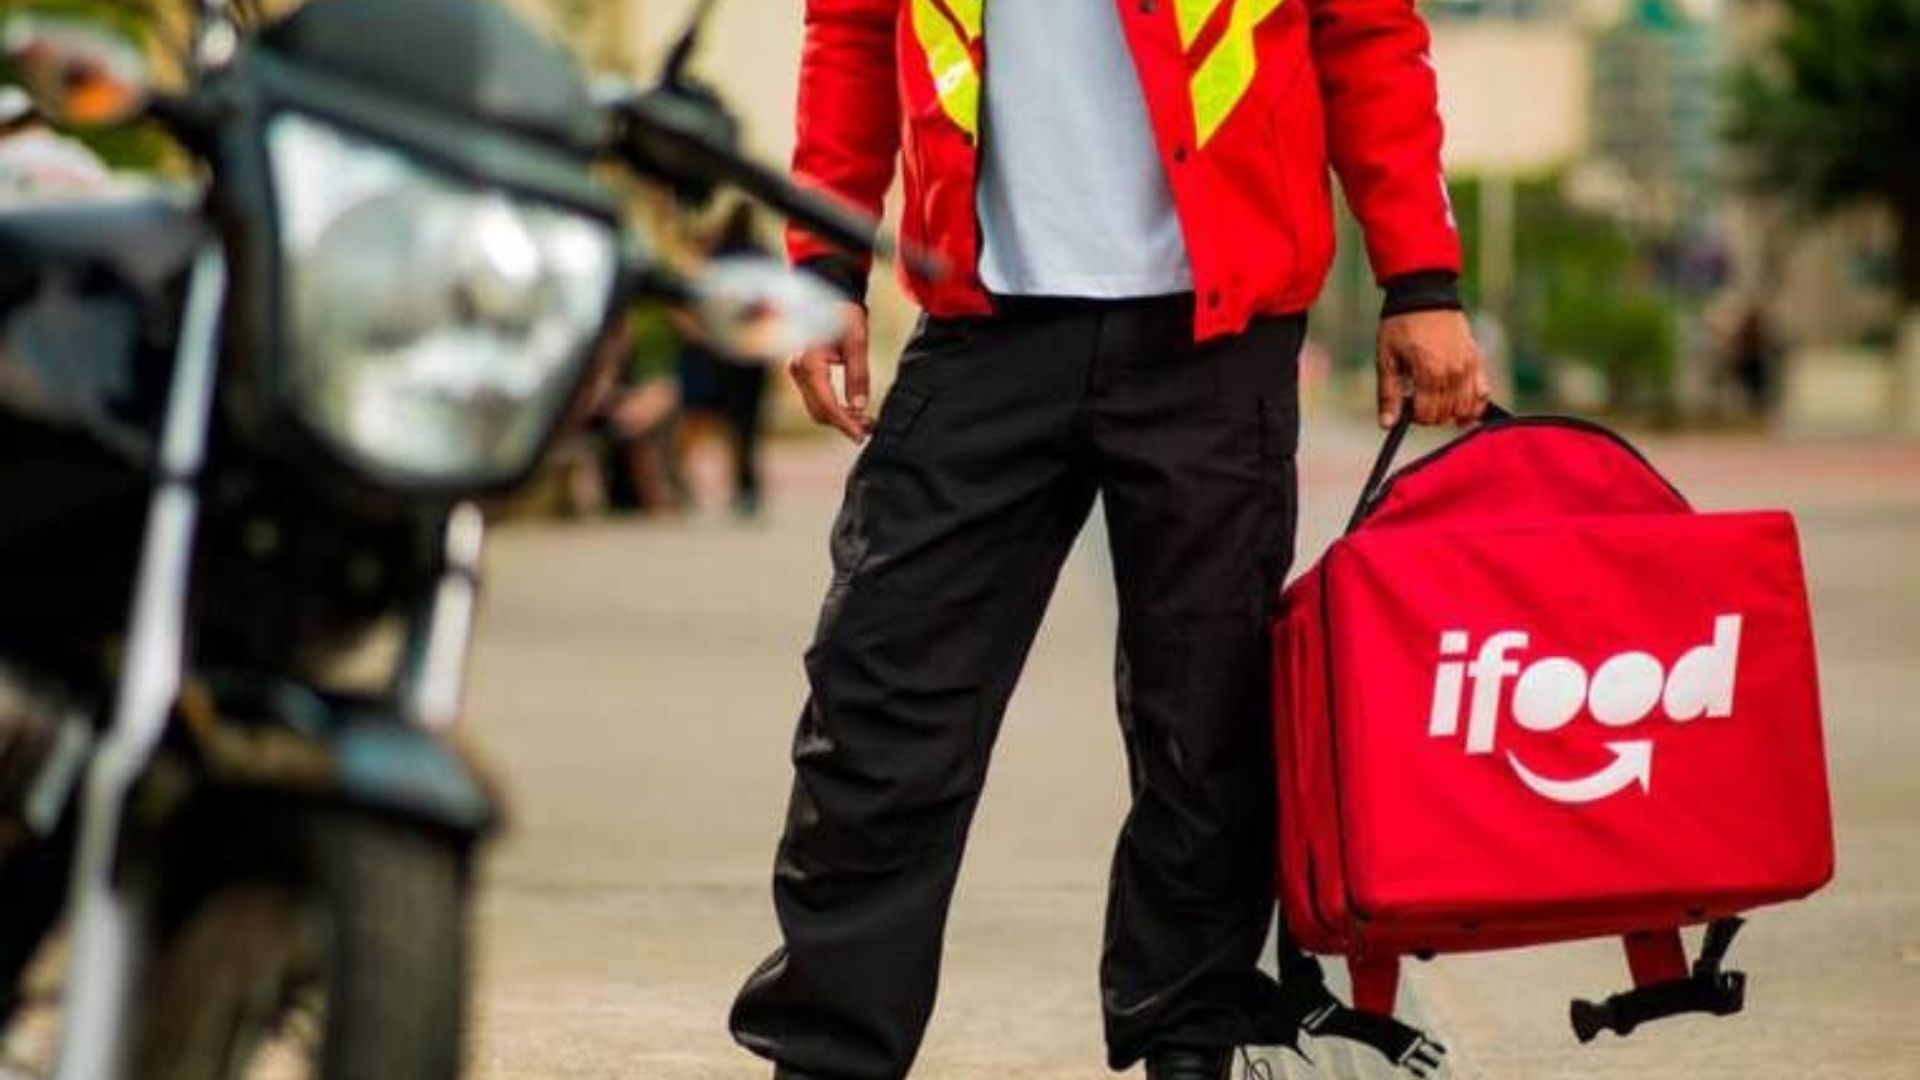 iFood nega contratação de agências para desmobilizar e atacar entregadores. Foto de entregador com uma mochila do iFood.